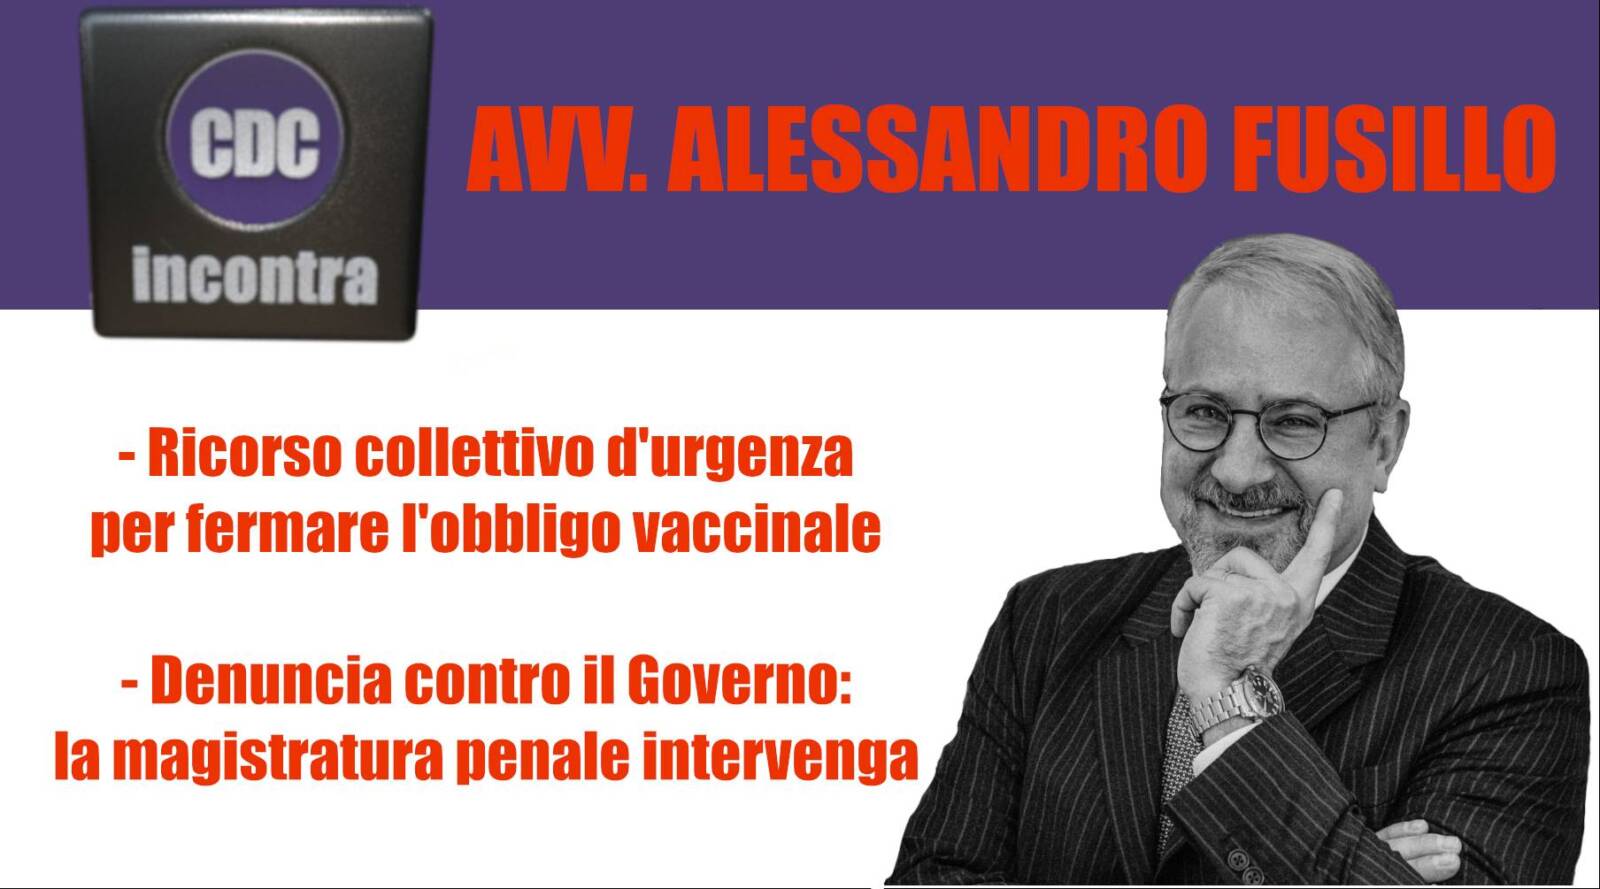 CDC Incontra - Avv. Alessandro Fusillo: Governo denunciato per Strage